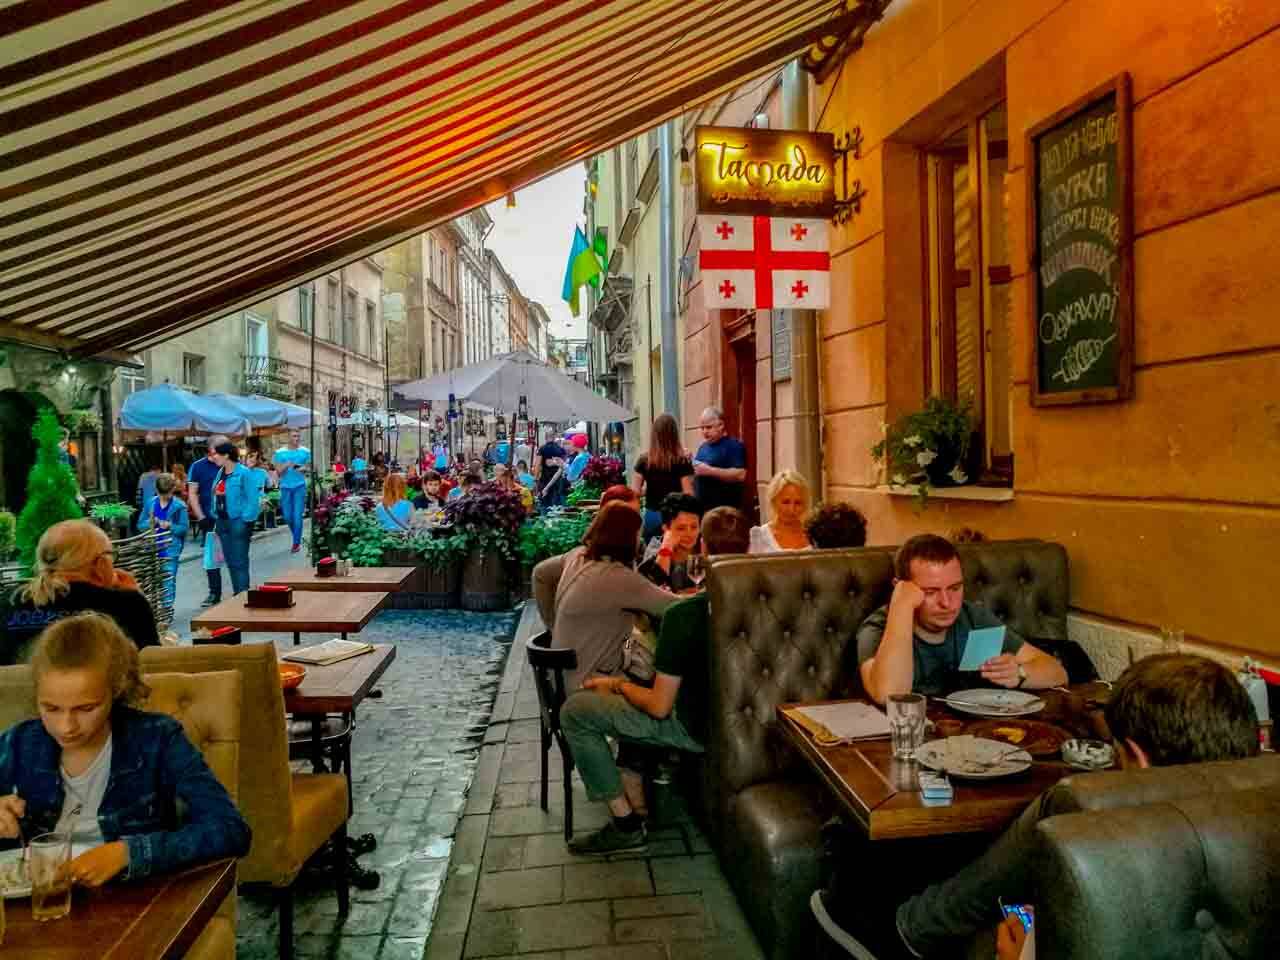 Restaurante de comida da Geórgia em Lviv com preço bem acessível (uma das gastronomias que mais apreciamos no mundo!).